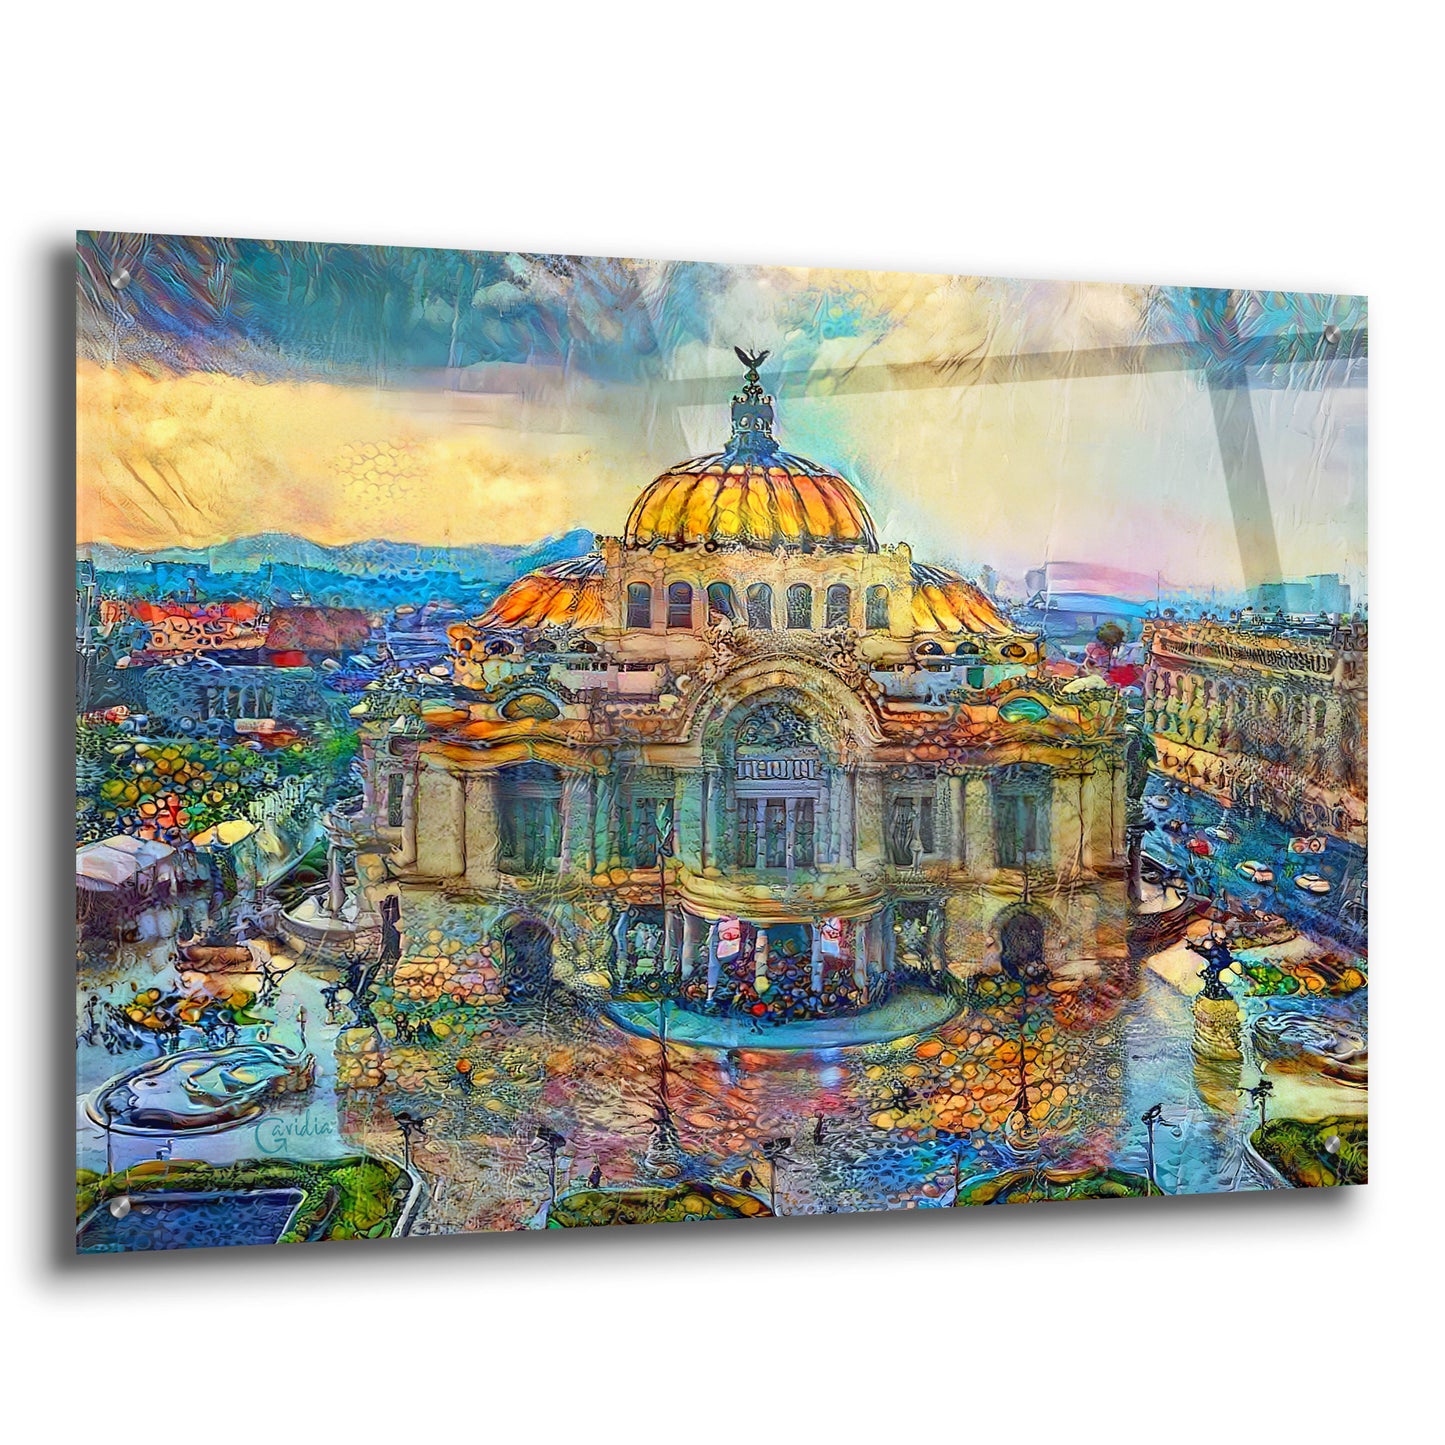 Epic Art 'Mexico City Palace of Fine Arts in the rain' by Pedro Gavidia, Acrylic Glass Wall Art,36x24